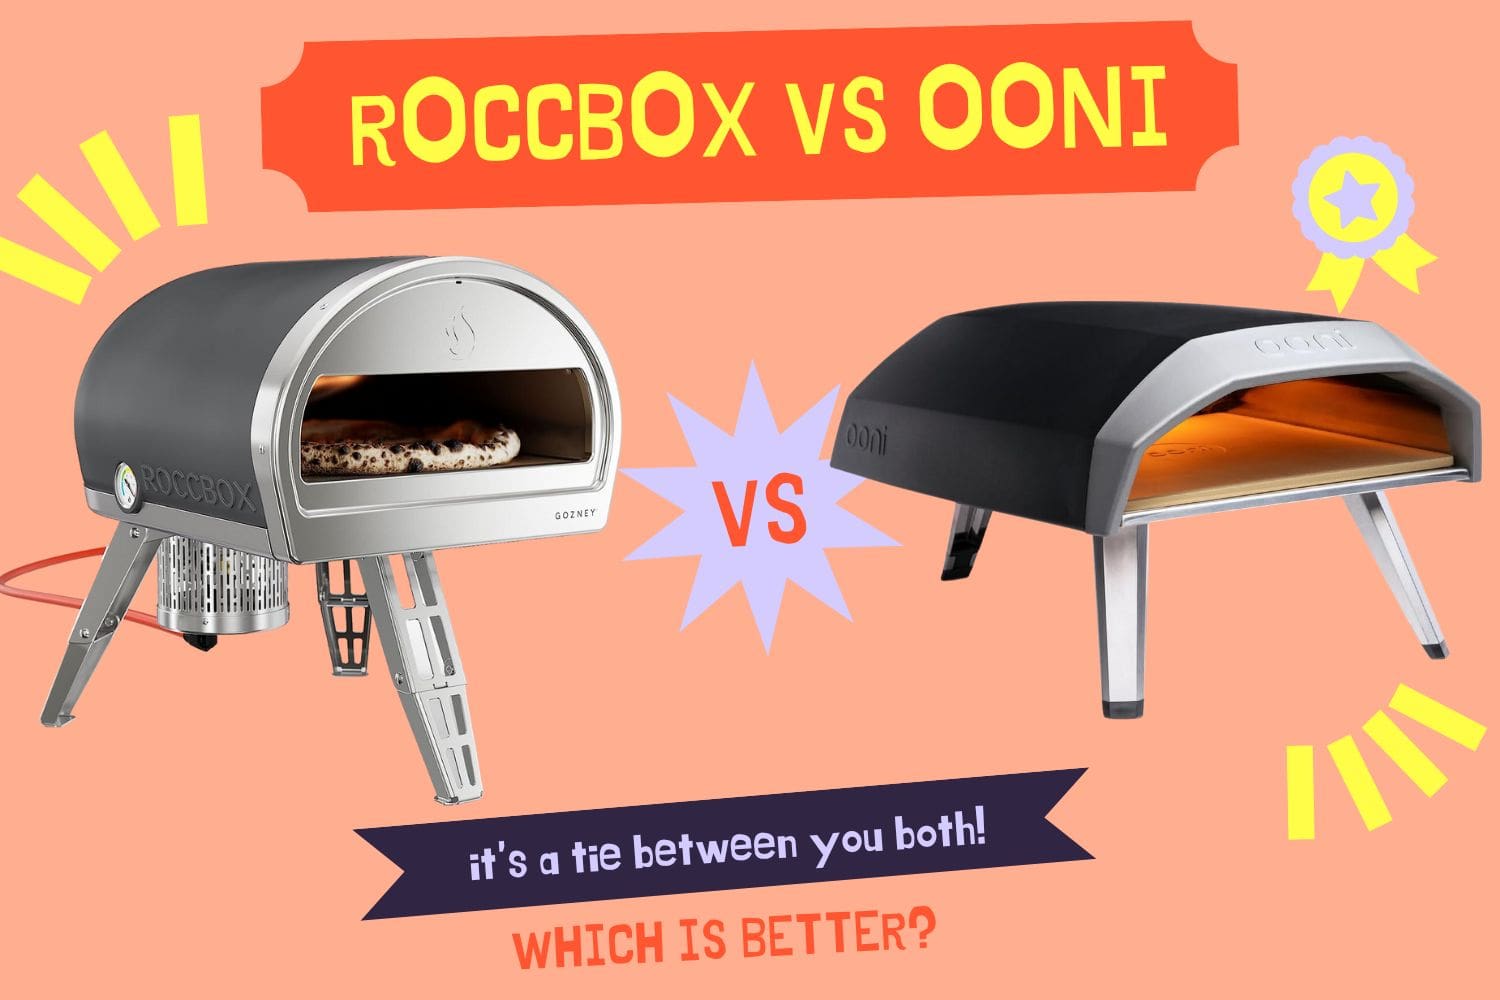 Roccbox vs Ooni